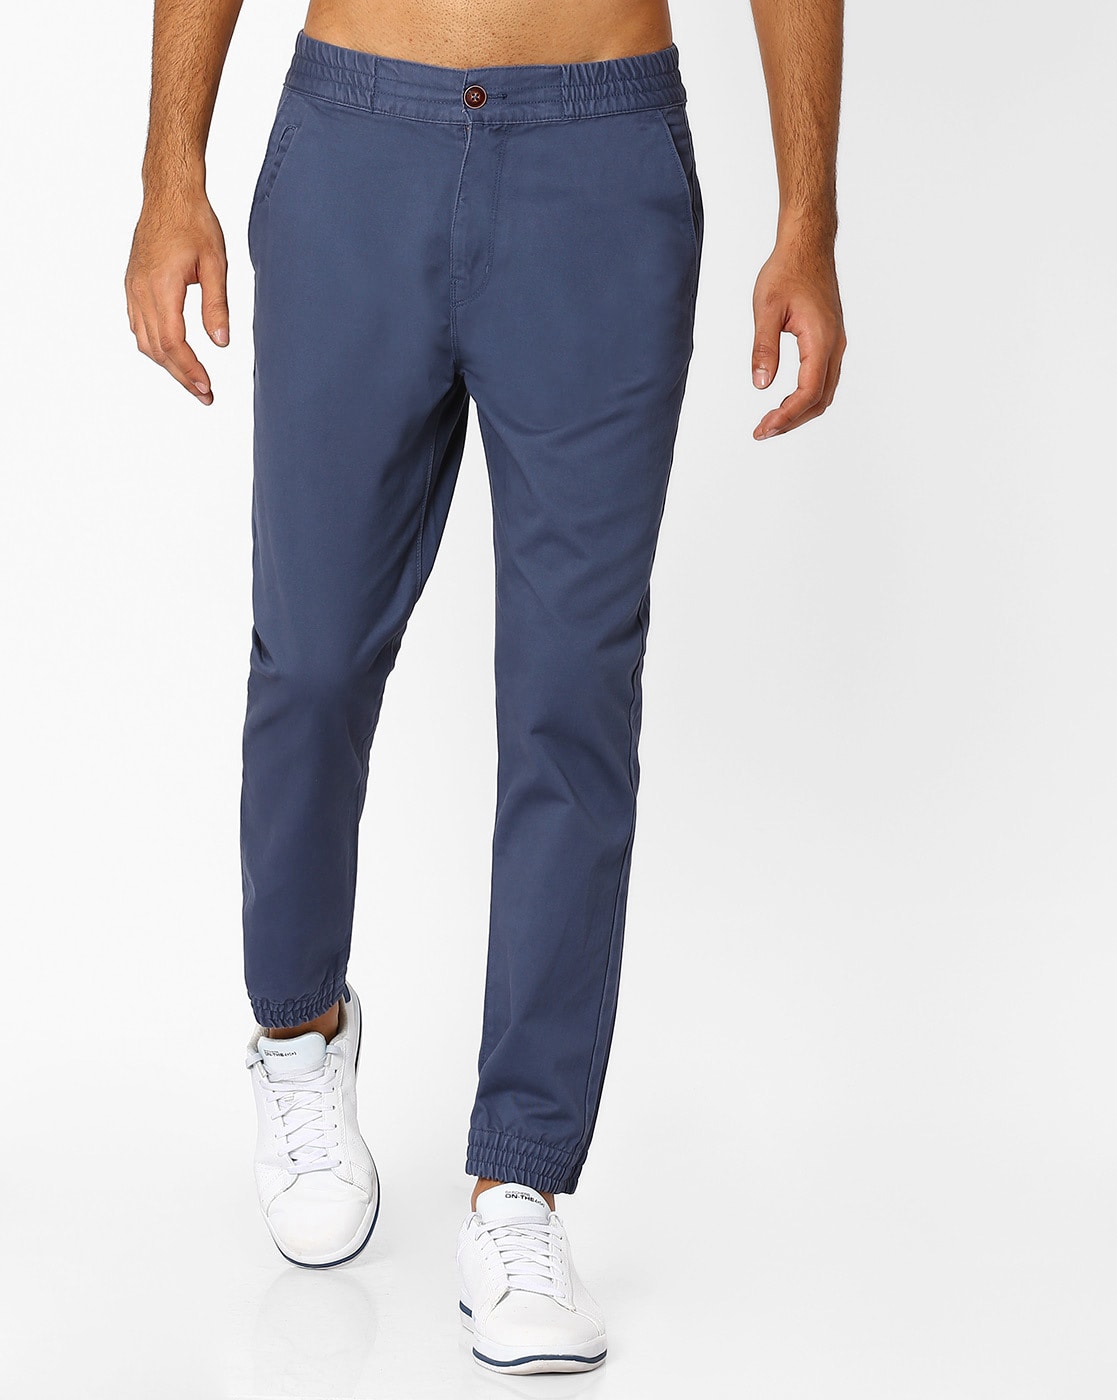 Slim Fit Cotton Twill Pants - Beige - Men | H&M US